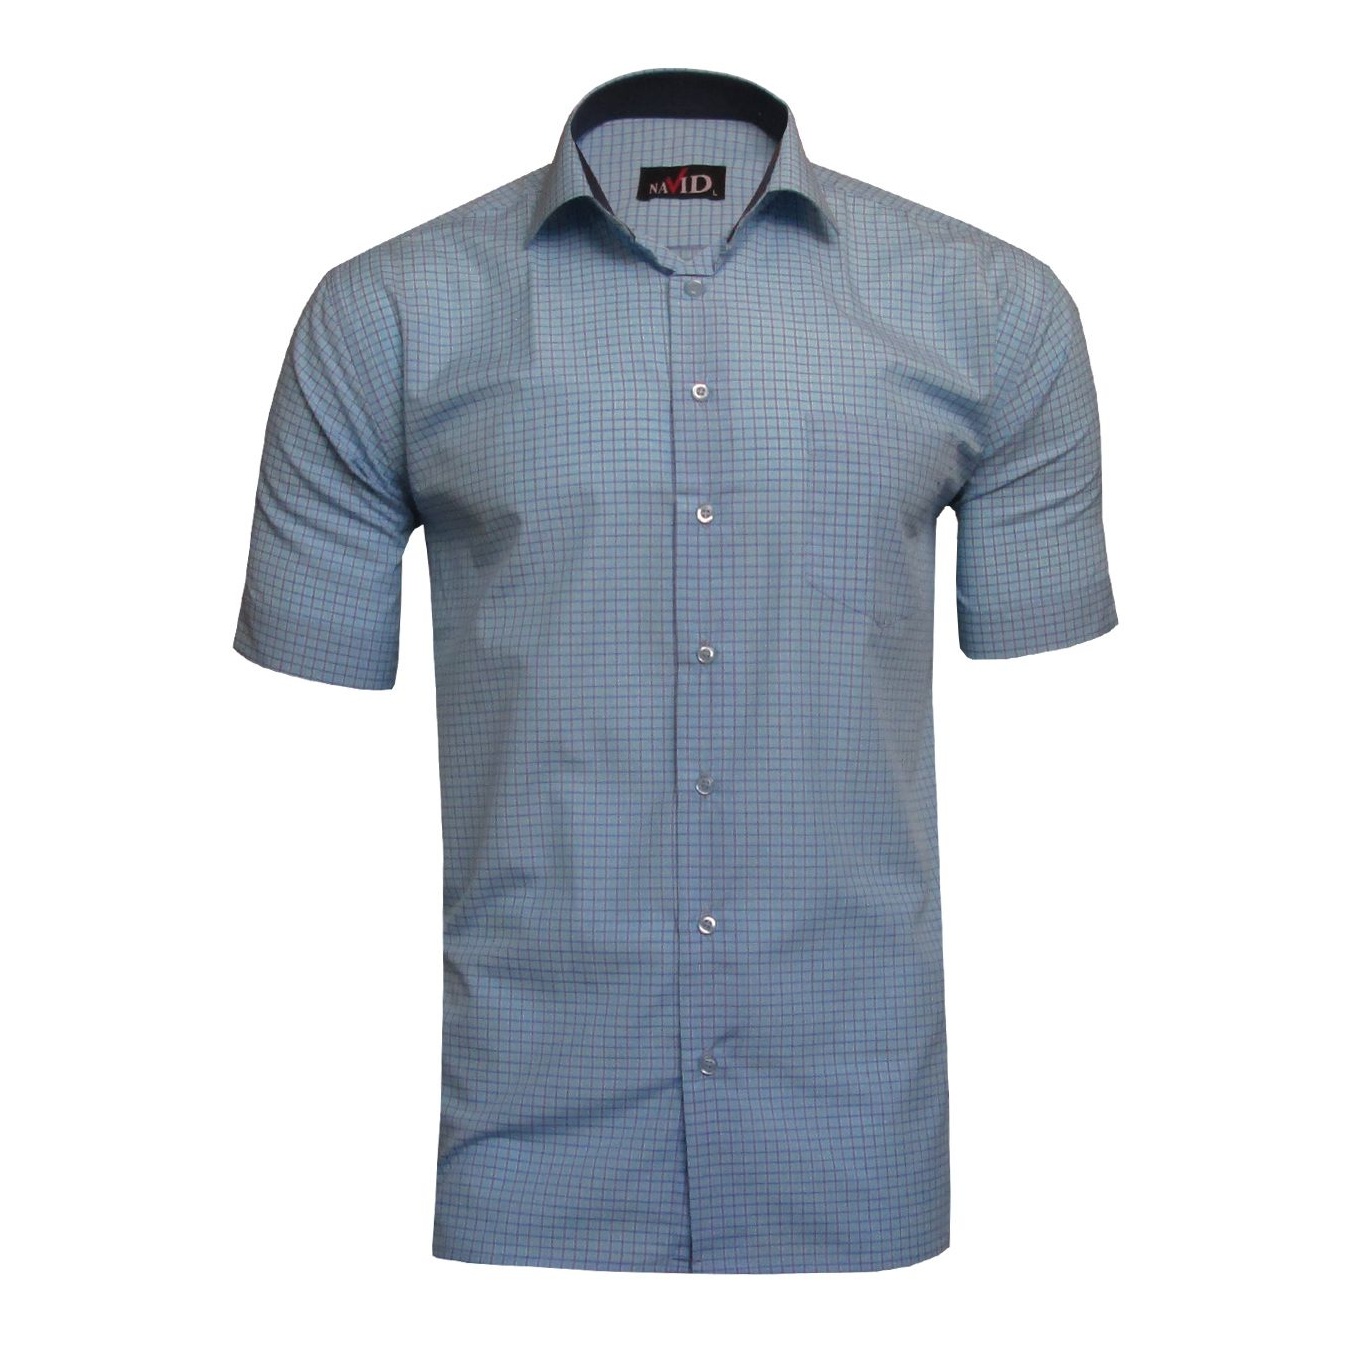 پیراهن آستین کوتاه مردانه نوید مدل TET-DAK کد 20310 رنگ آجری